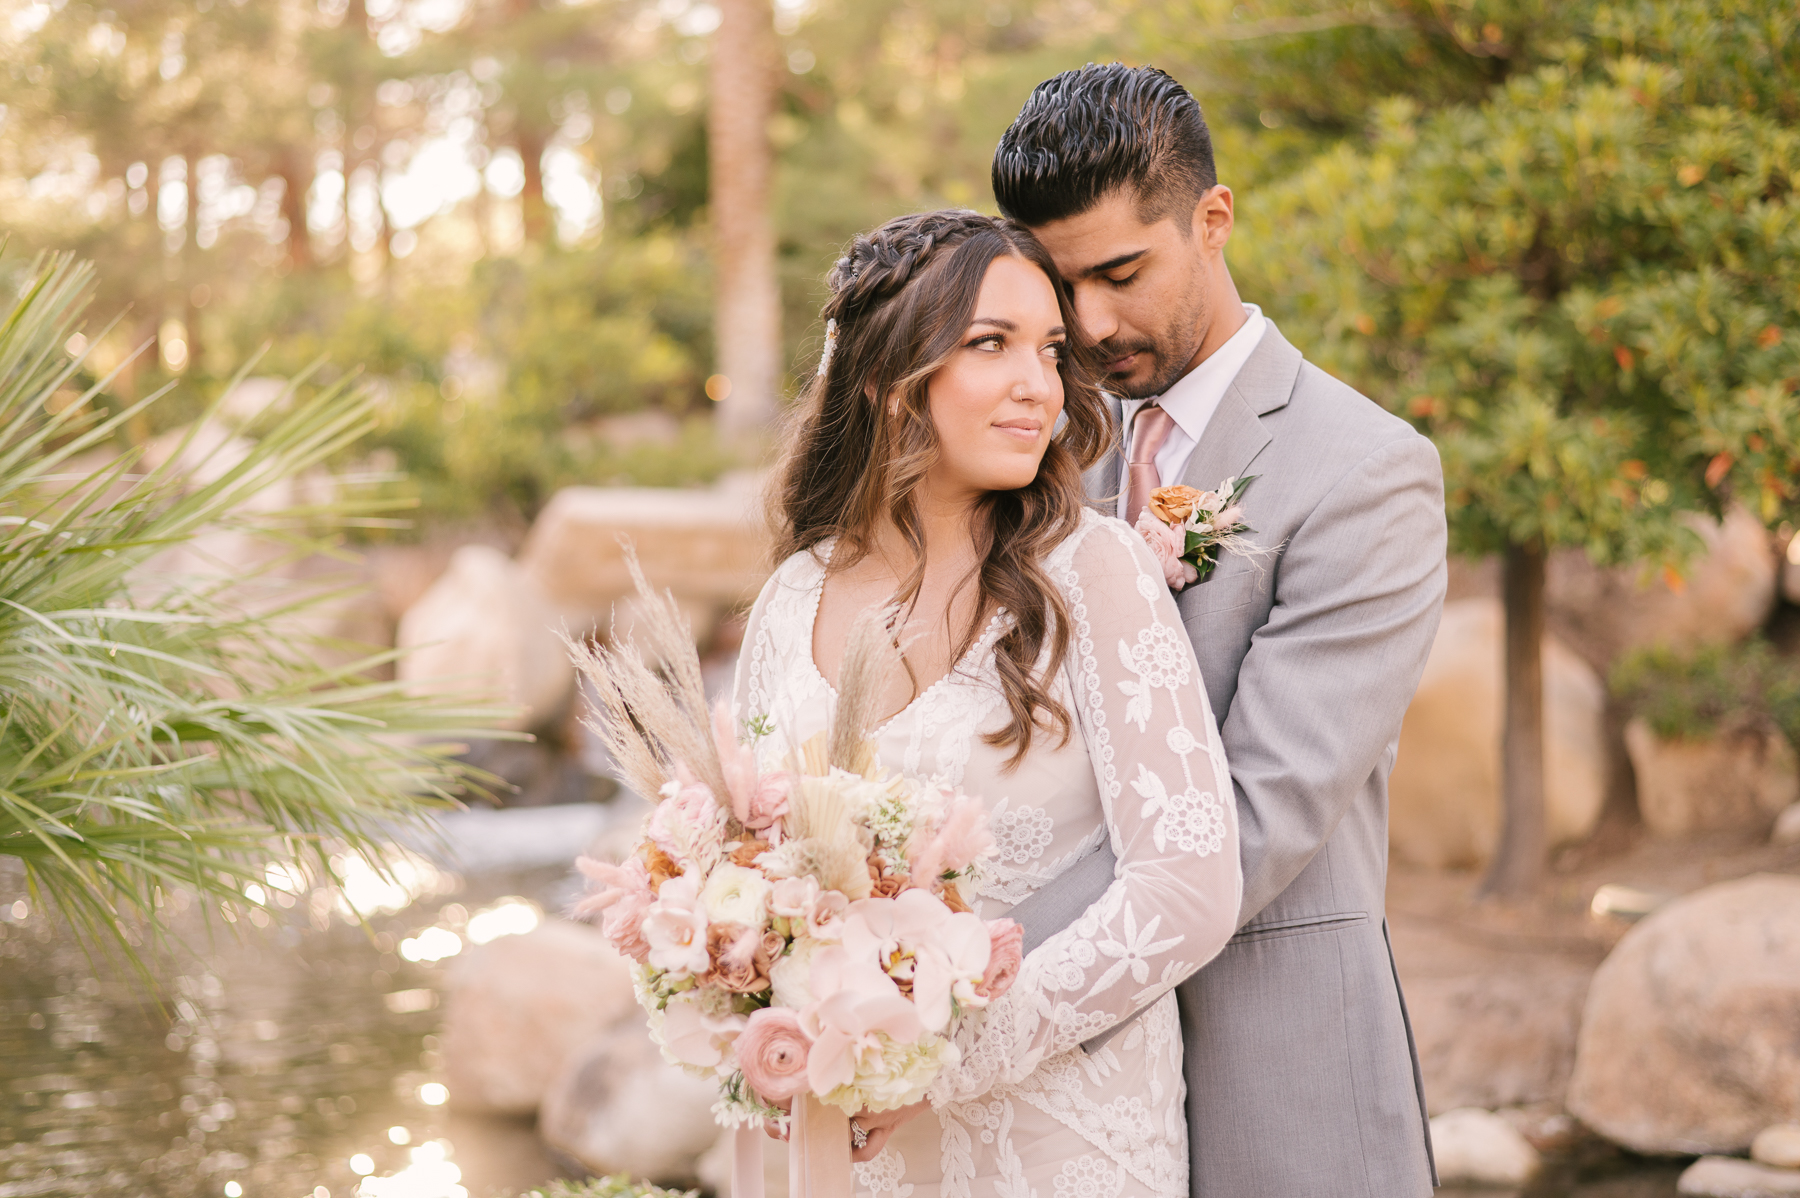 JW Marriott: Las Vegas Wedding Planning Guide. Groom hugs bride from behind during their wedding shoot.